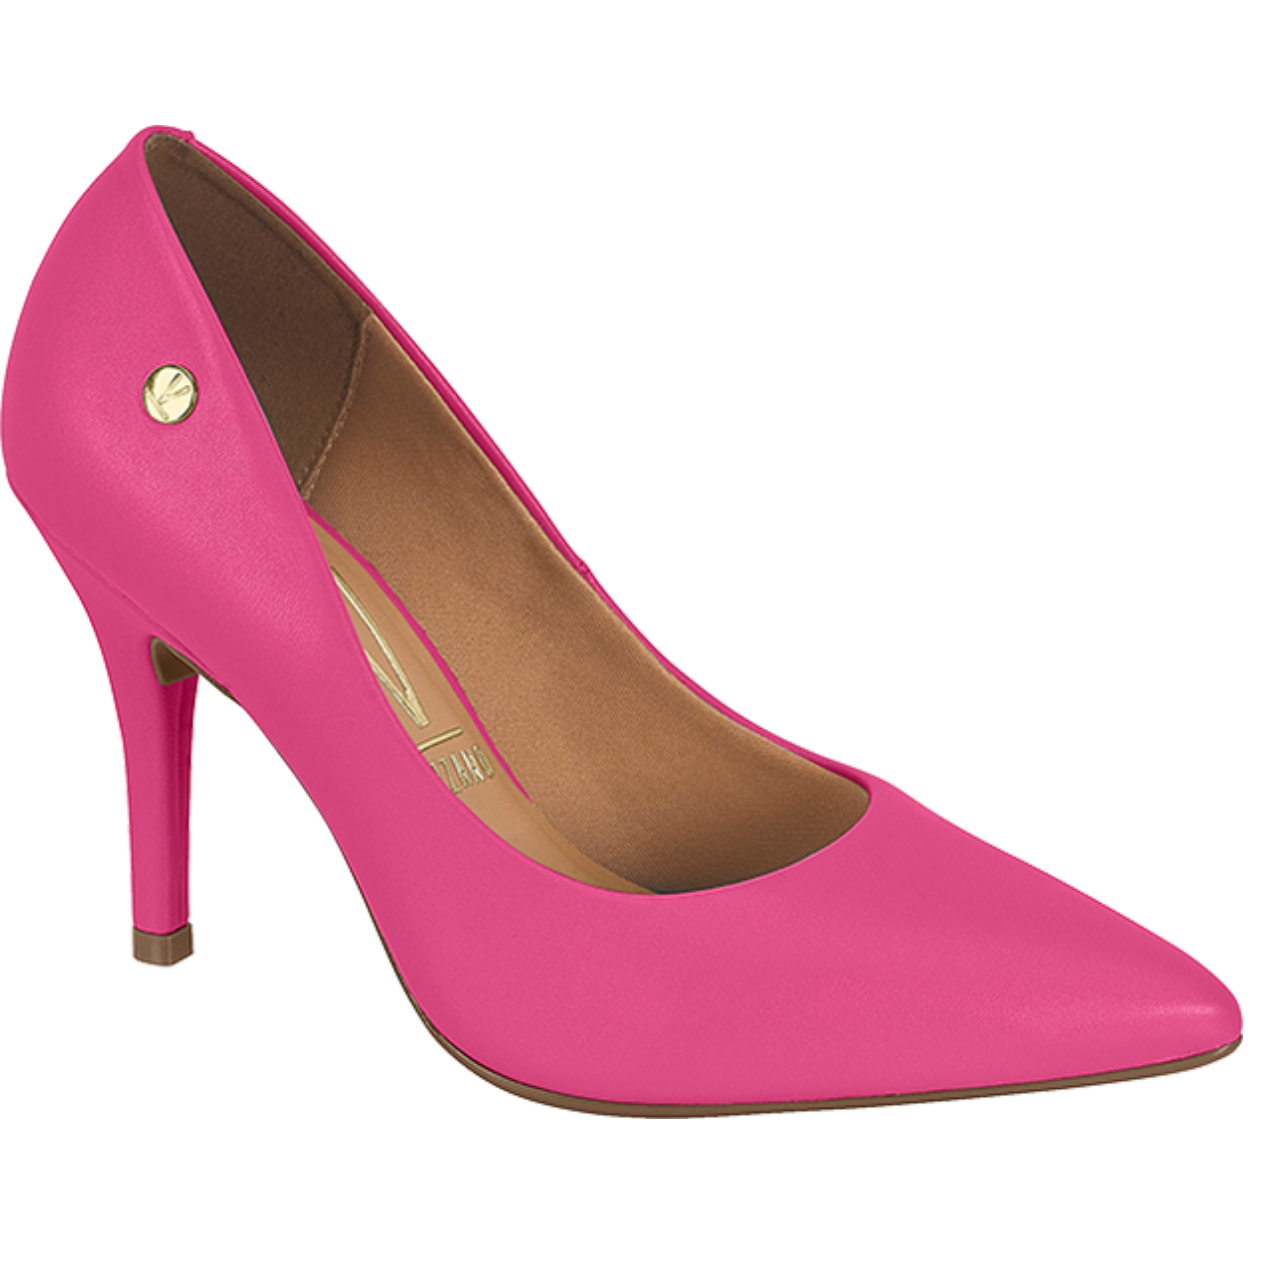 Zapato Stiletto Clasico Pink - Coqueterias Zapatos